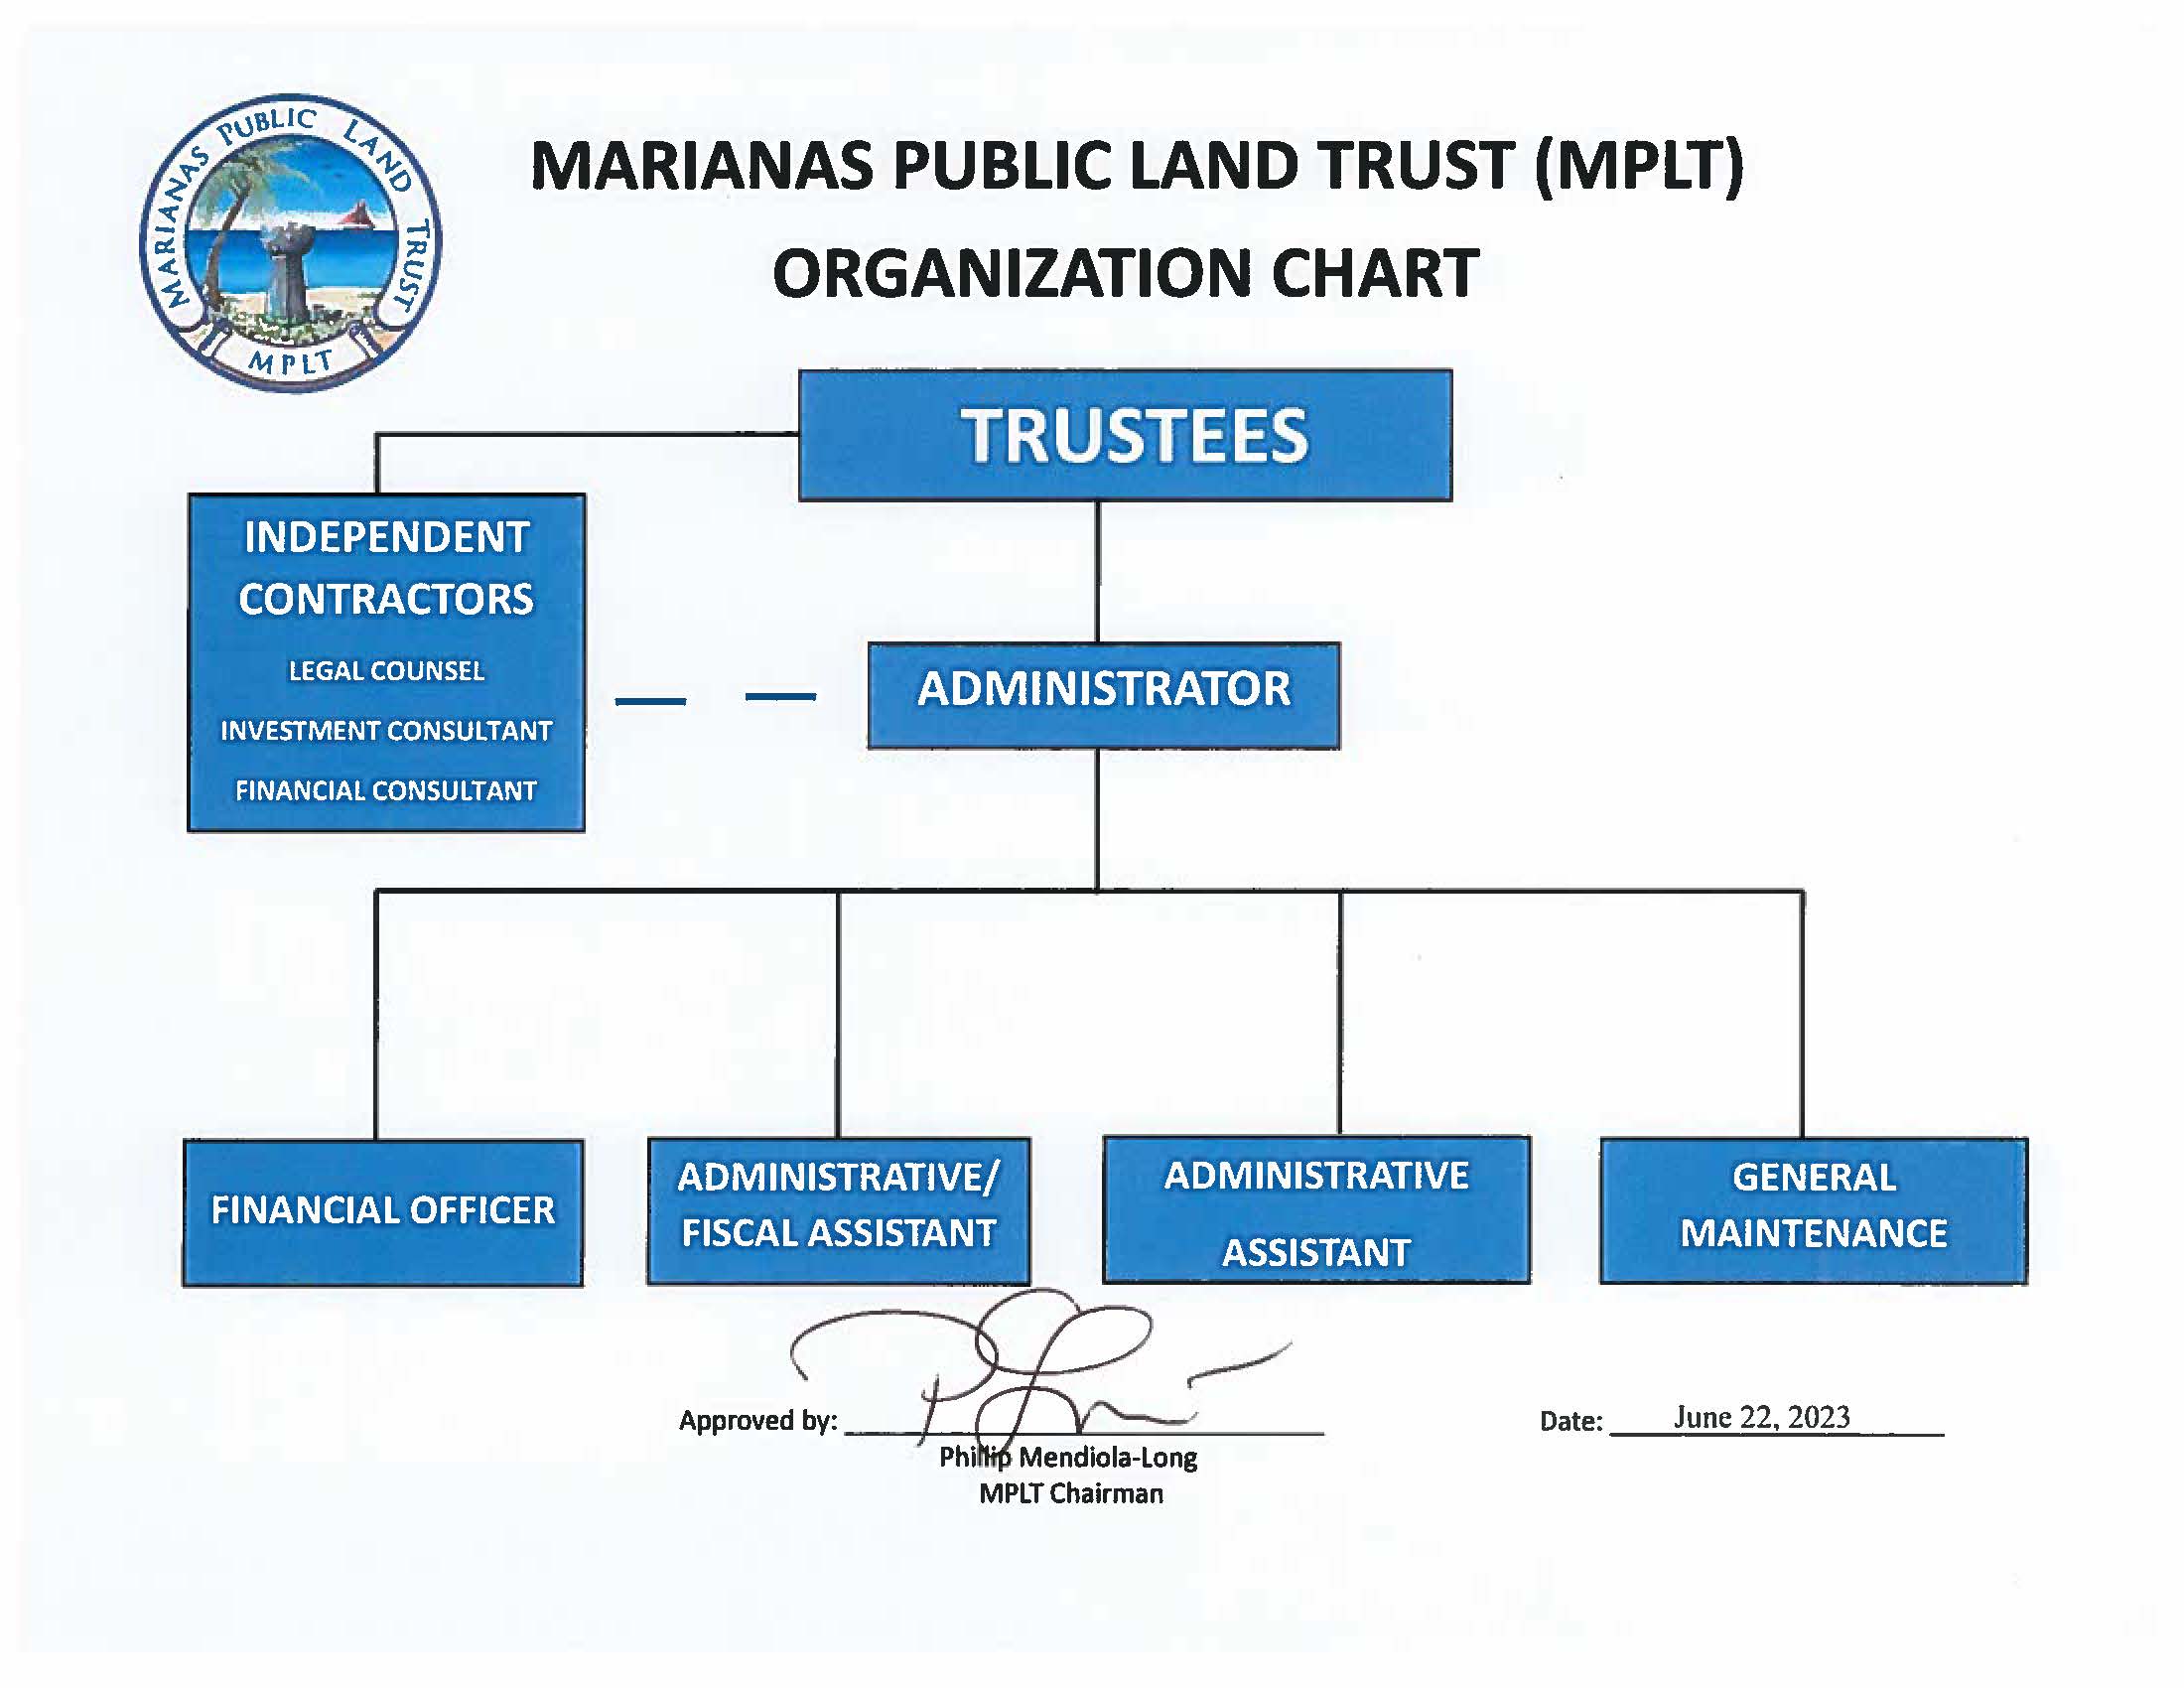 MPLT ORG CHART 2023